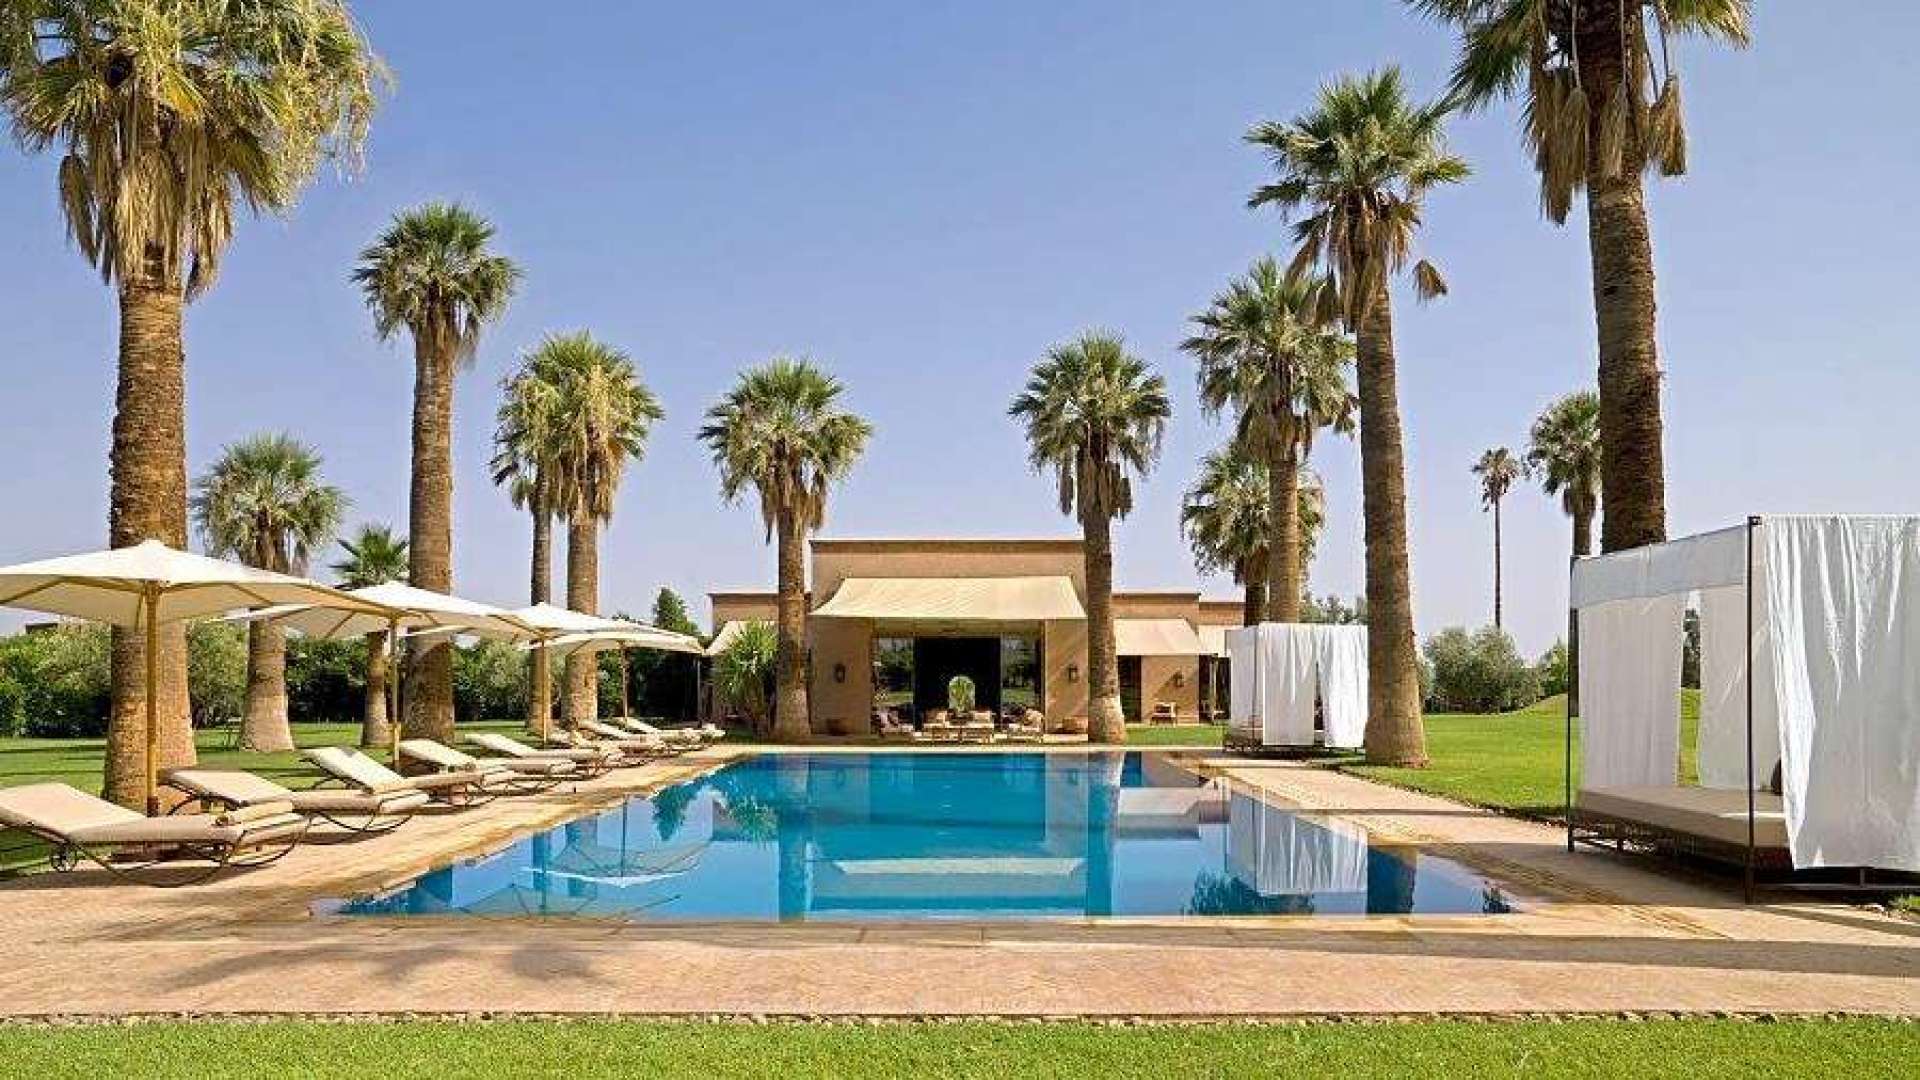 Location de vacances,Villa,Villa 5 suites & 3 chambres sur plus d'1 hectare avec services hôteliers près des Golfs à Marrakech,Marrakech,Sidi Abdellah Ghiyate